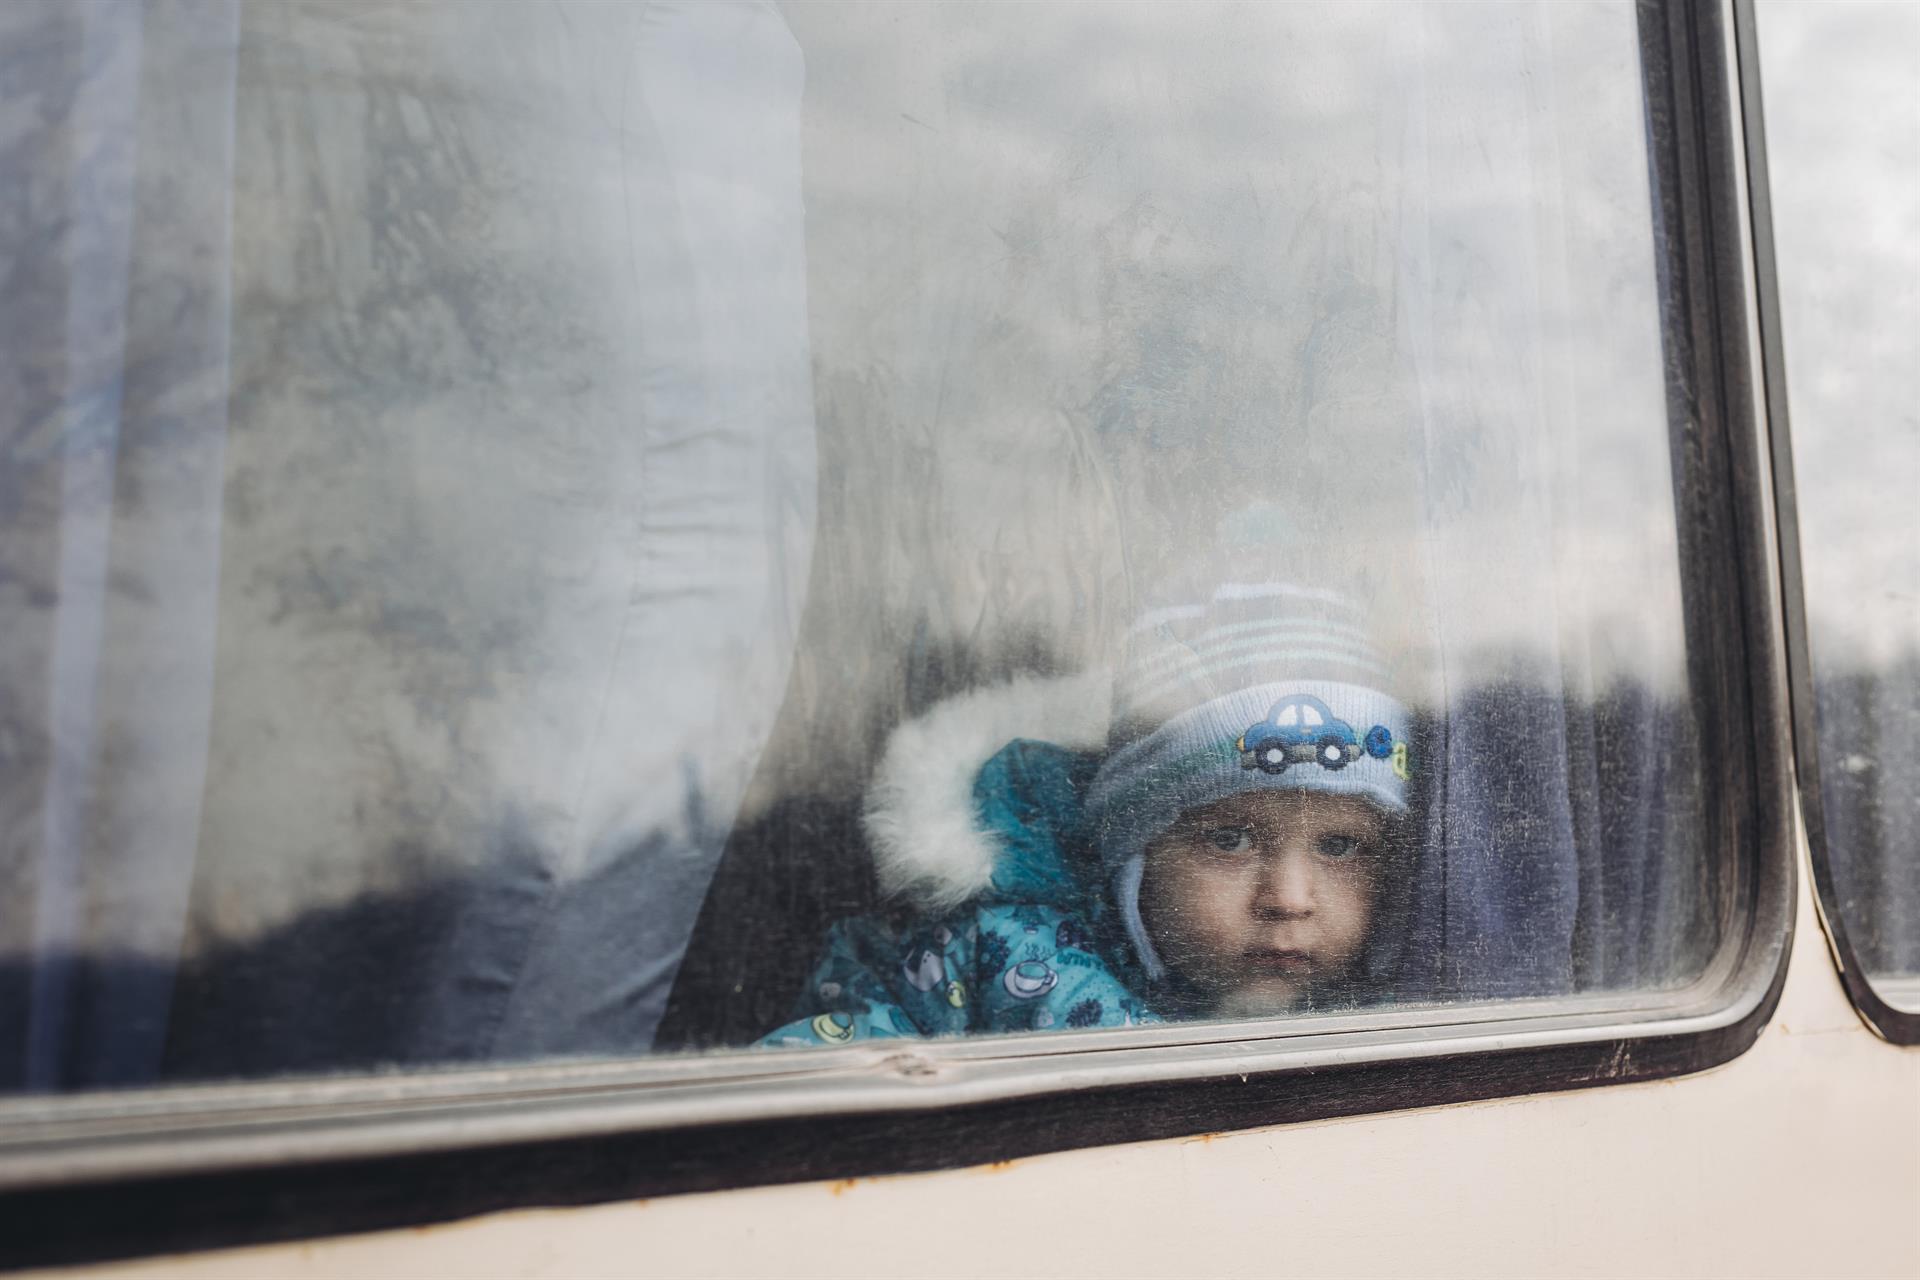 UNICEF condena el ataque contra la escuela de Lugansk, que califica de violación del derecho Internacional